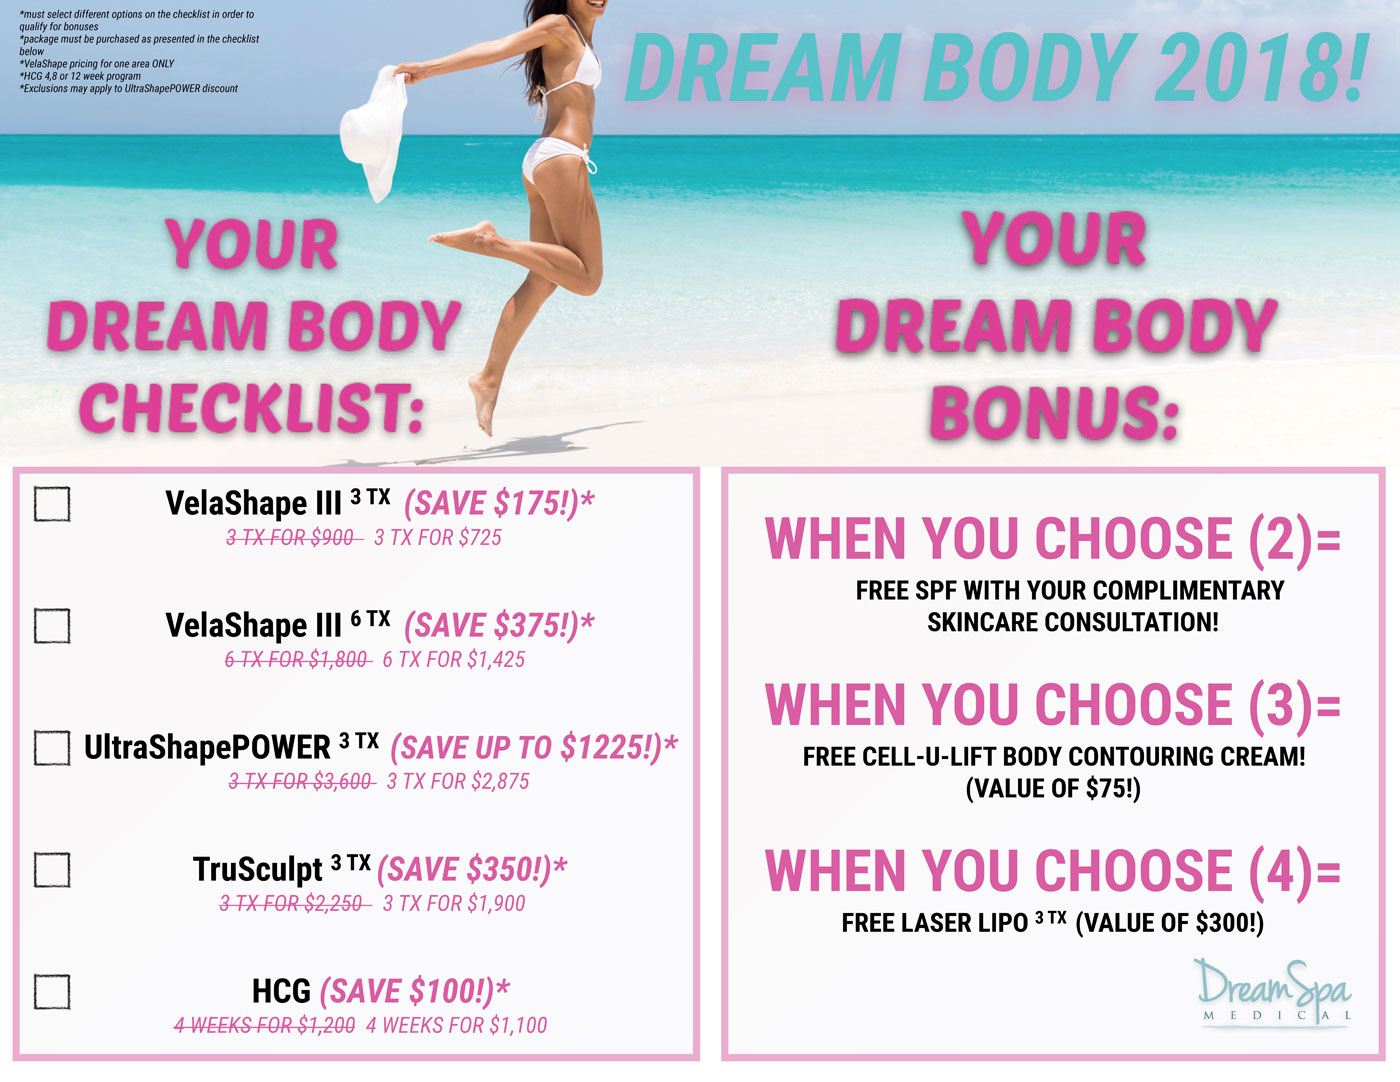 Dream Spa Medical Blog | Dream Body 2018 Special - Brookline MA